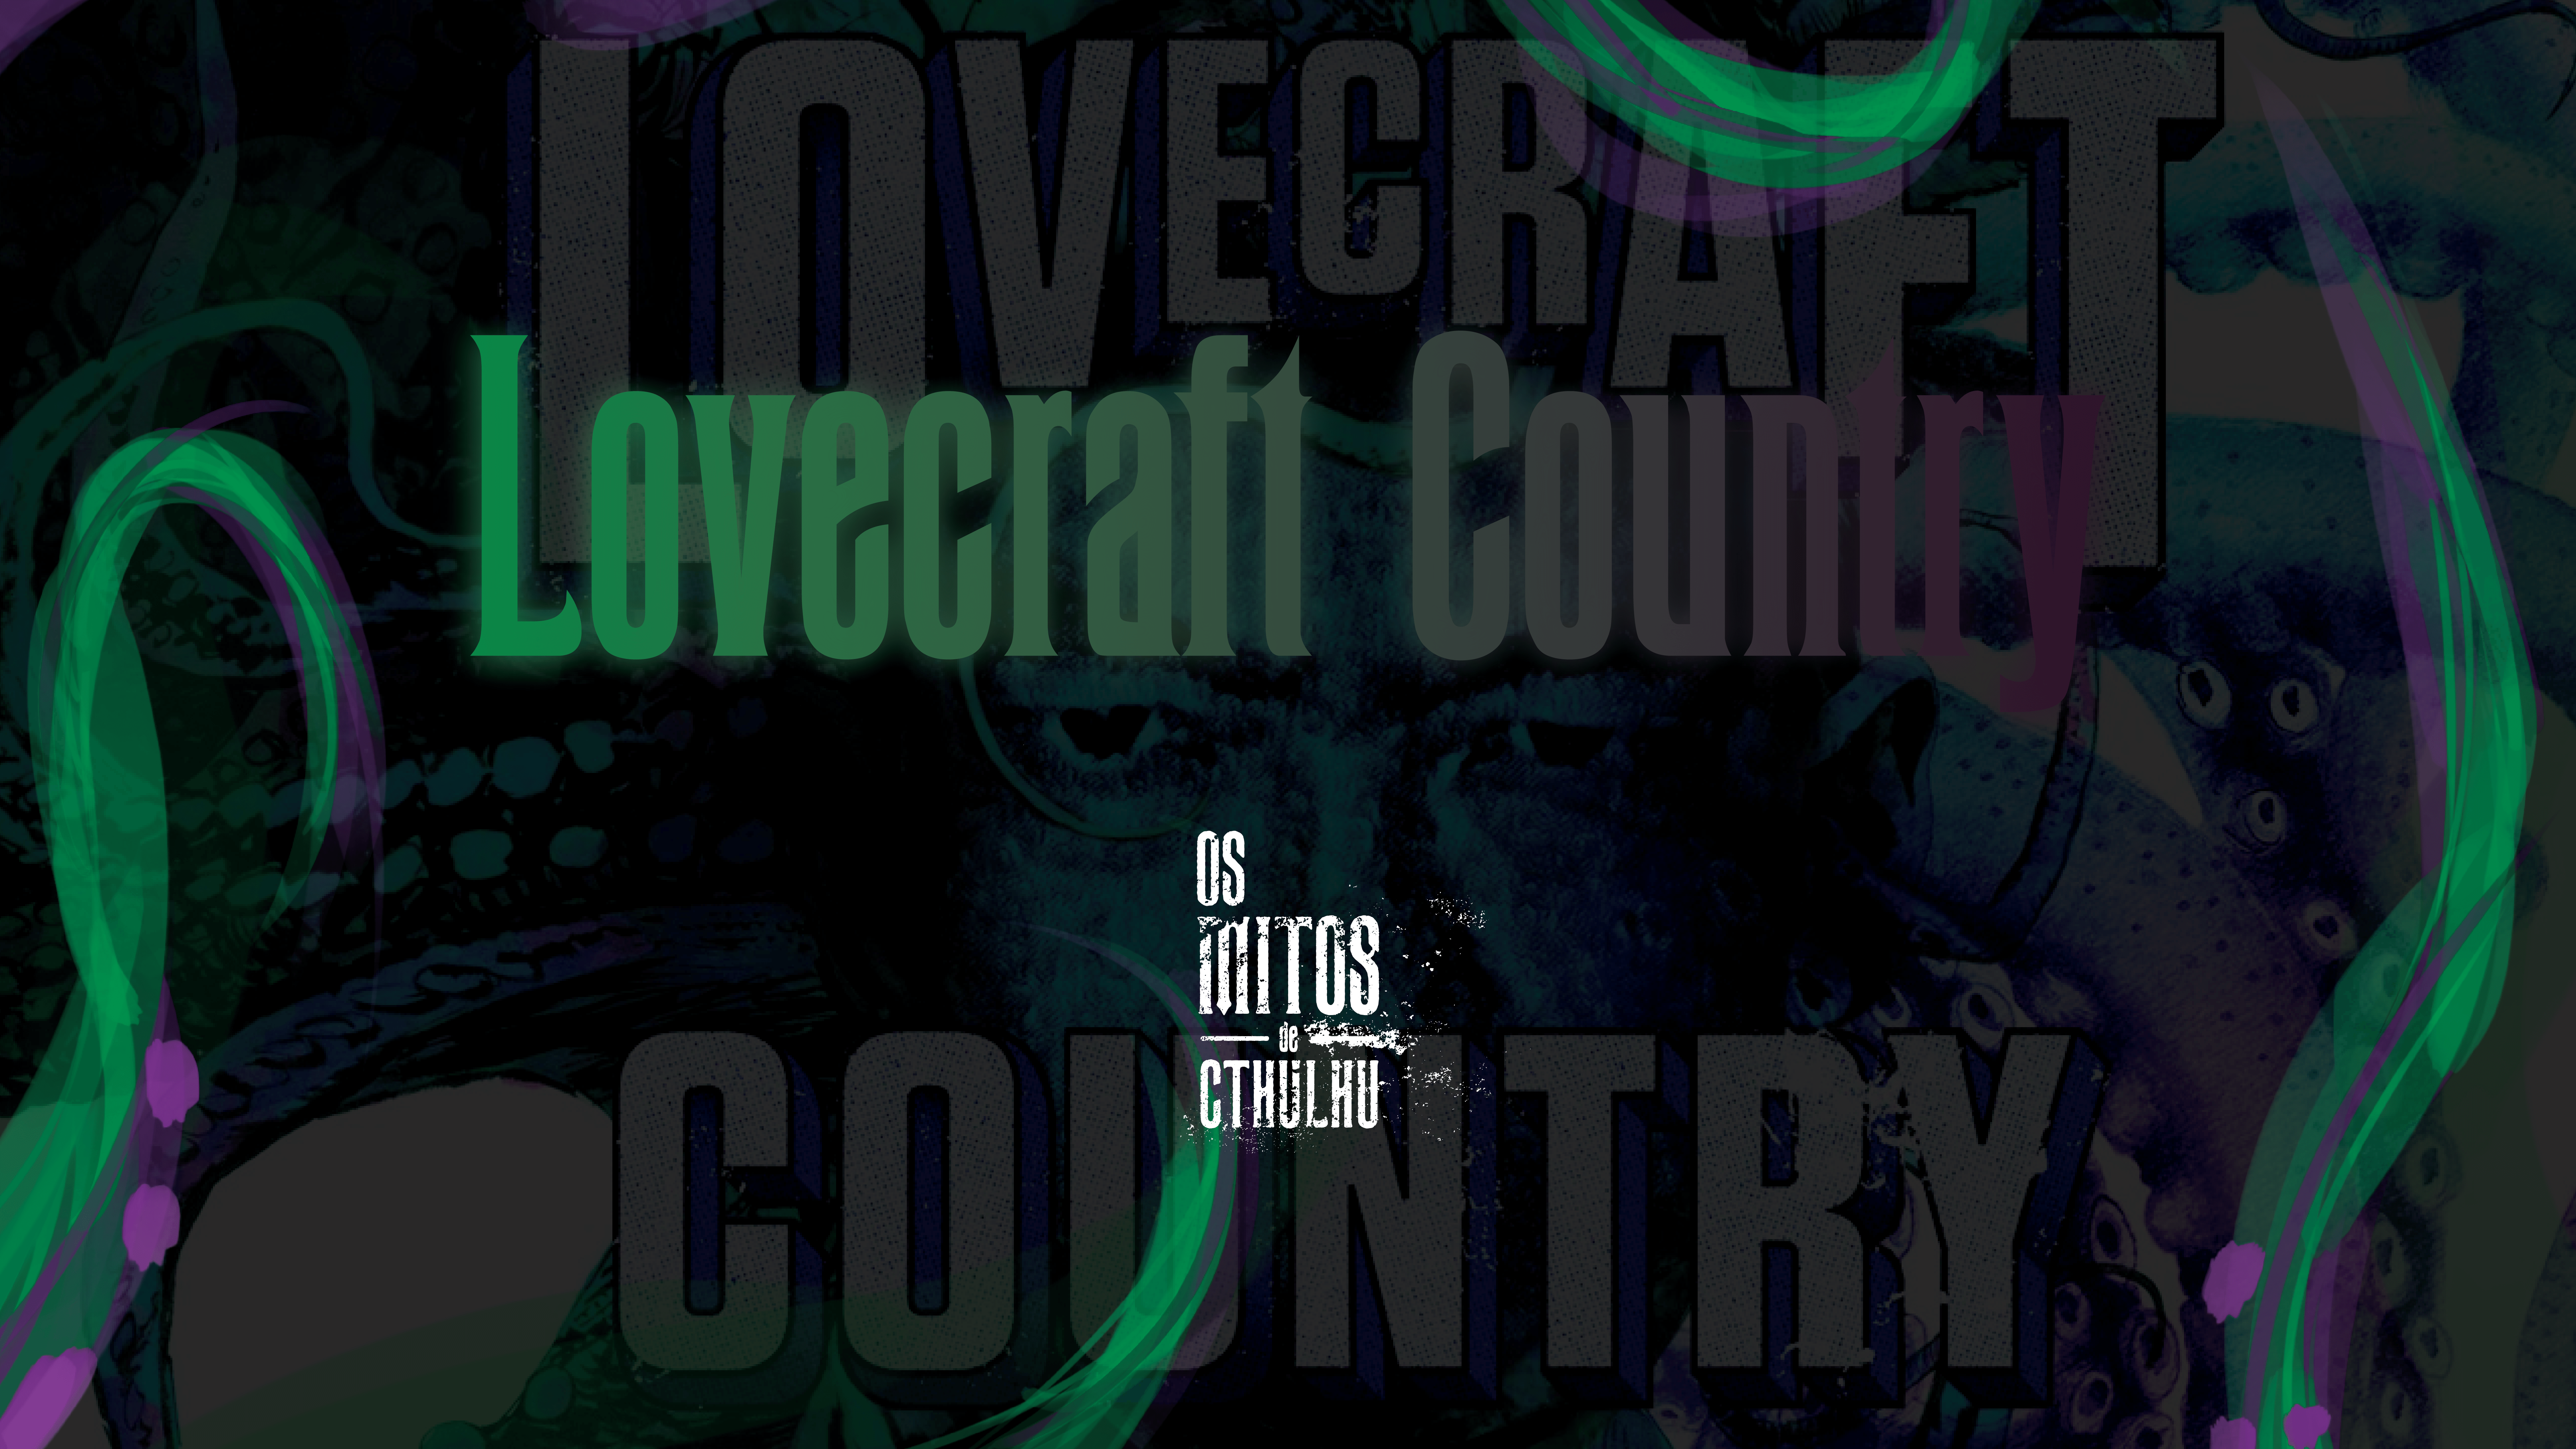 Lovecraft Country vai virar série pela HBO | Mitos de Cthulhu